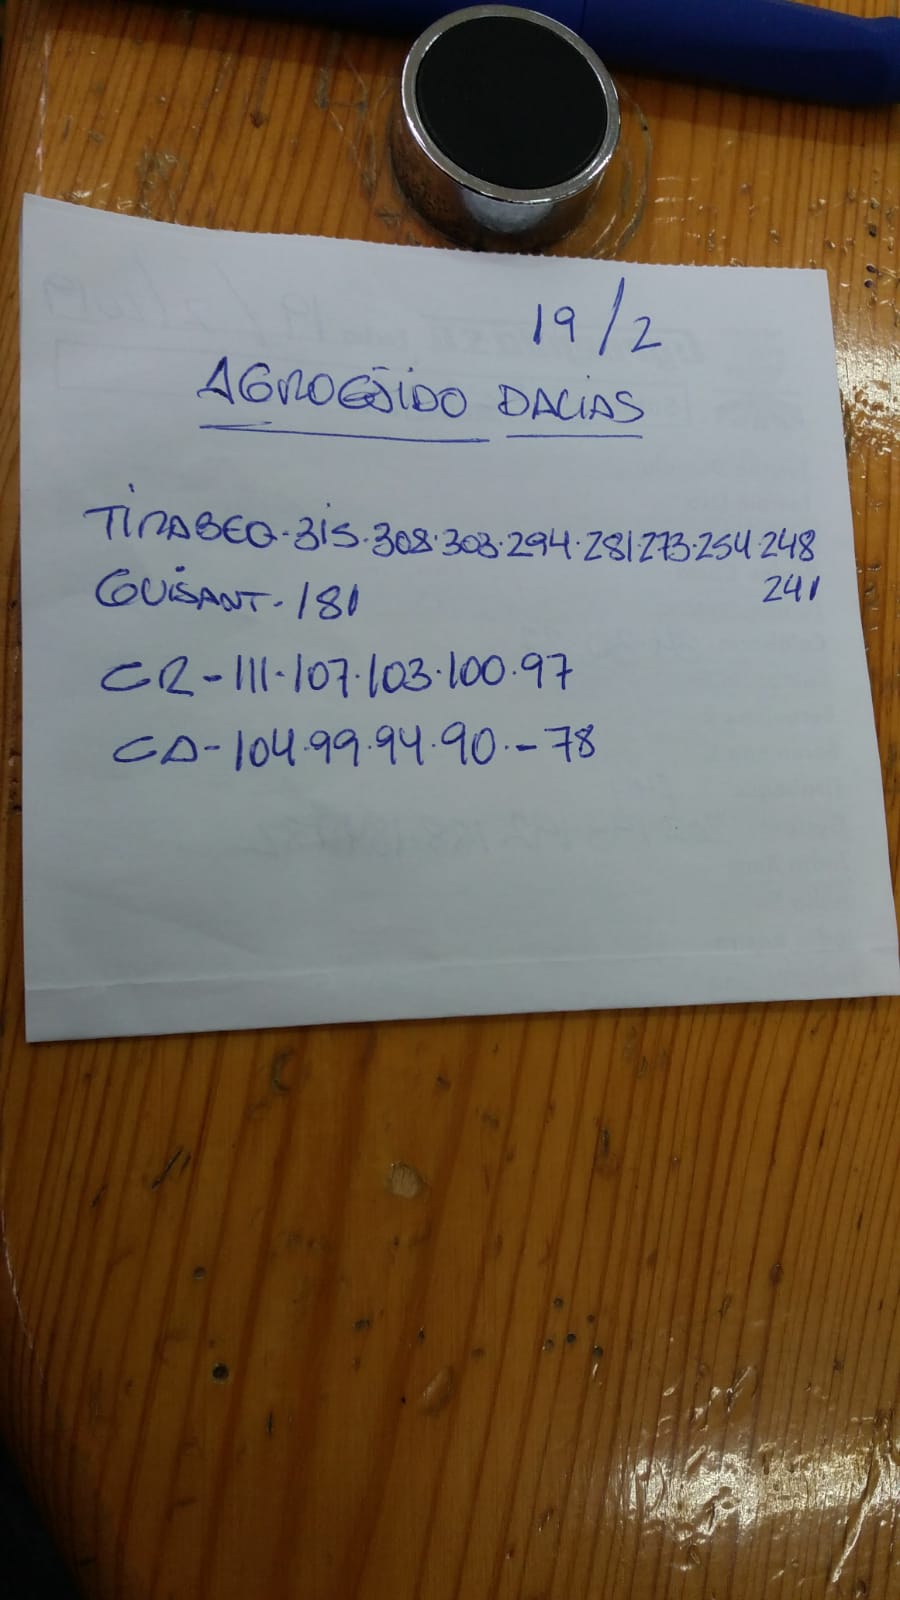 Subasta hortofrutícola AgroEjido Dalias 19 de Febrero 2019